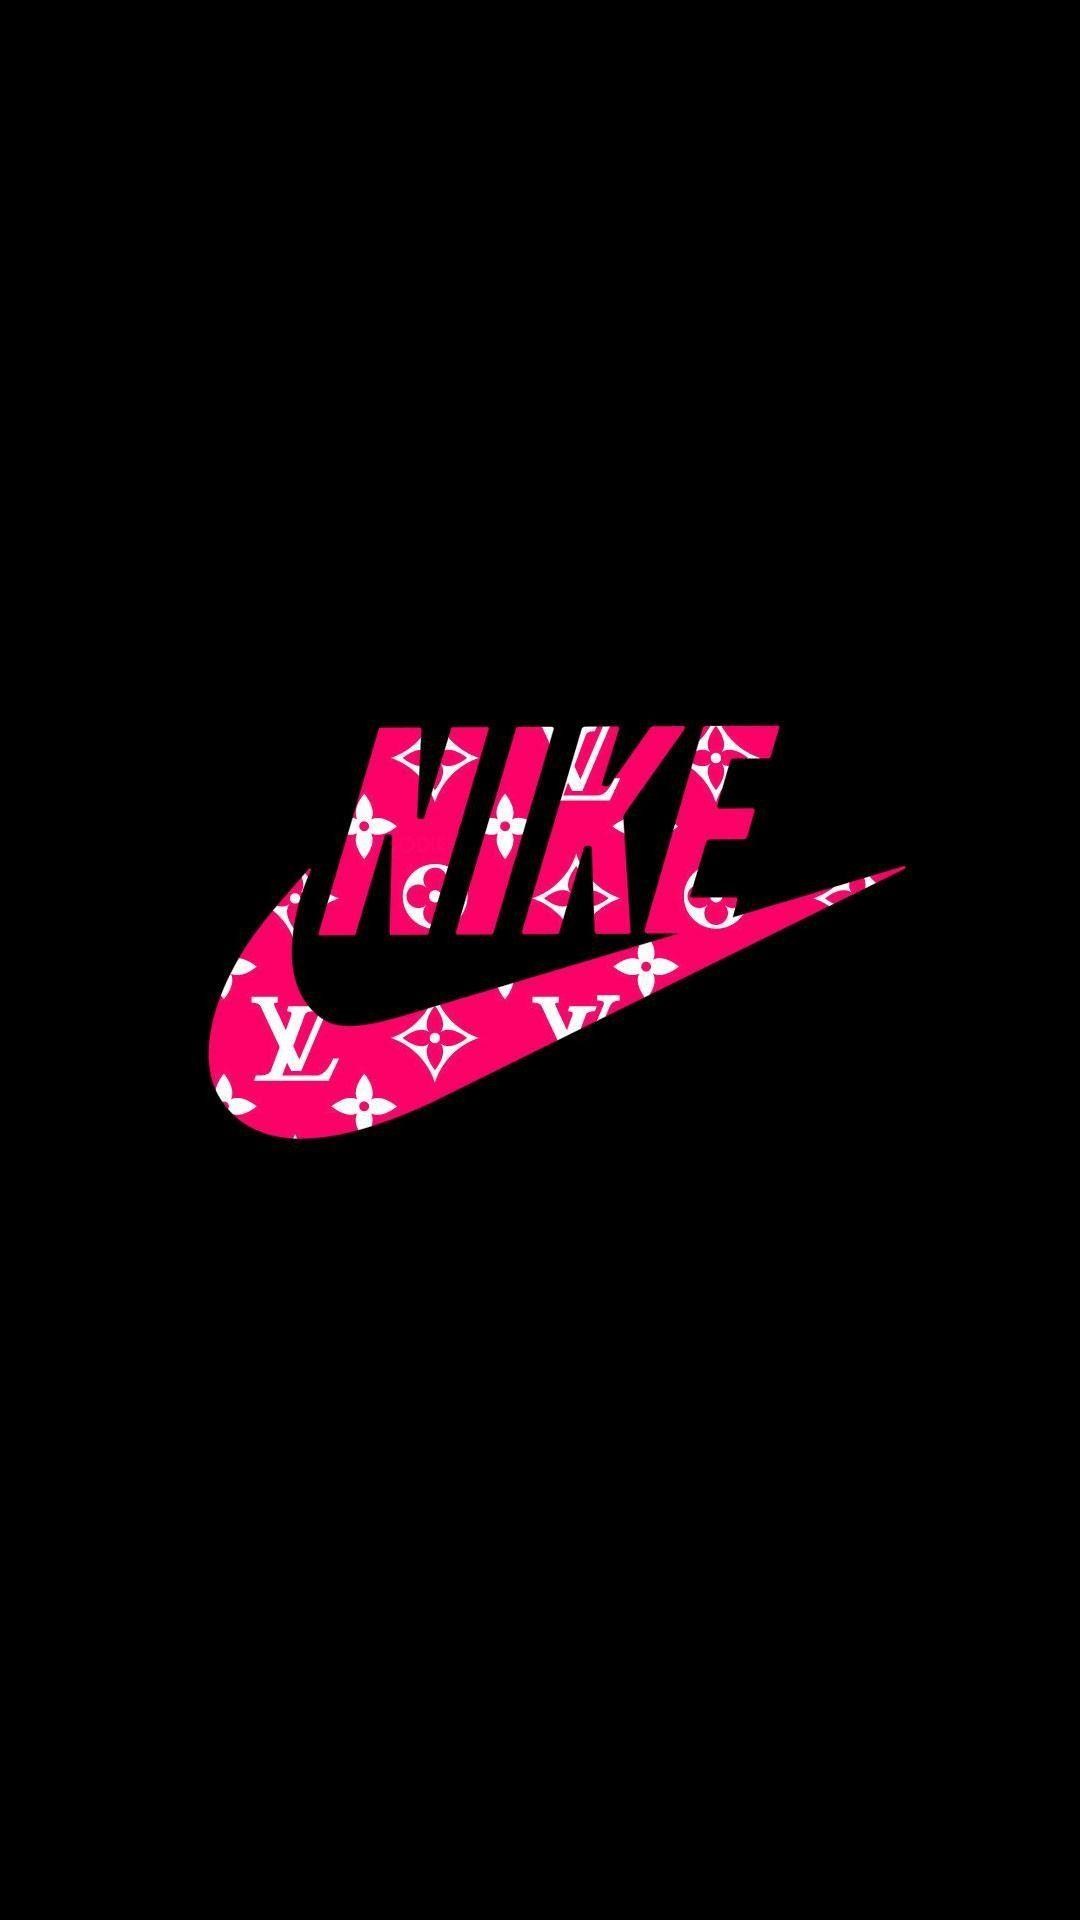 Pink Nike Logo Wallpaper - Biểu tượng Nike màu hồng sẽ làm cho điện thoại của bạn trông đẹp mắt hơn bao giờ hết. Sự khéo léo trong thiết kế và màu sắc tươi sáng sẽ giúp bạn có được một màn hình chủ lên đến toàn bộ sức hấp dẫn của nó.